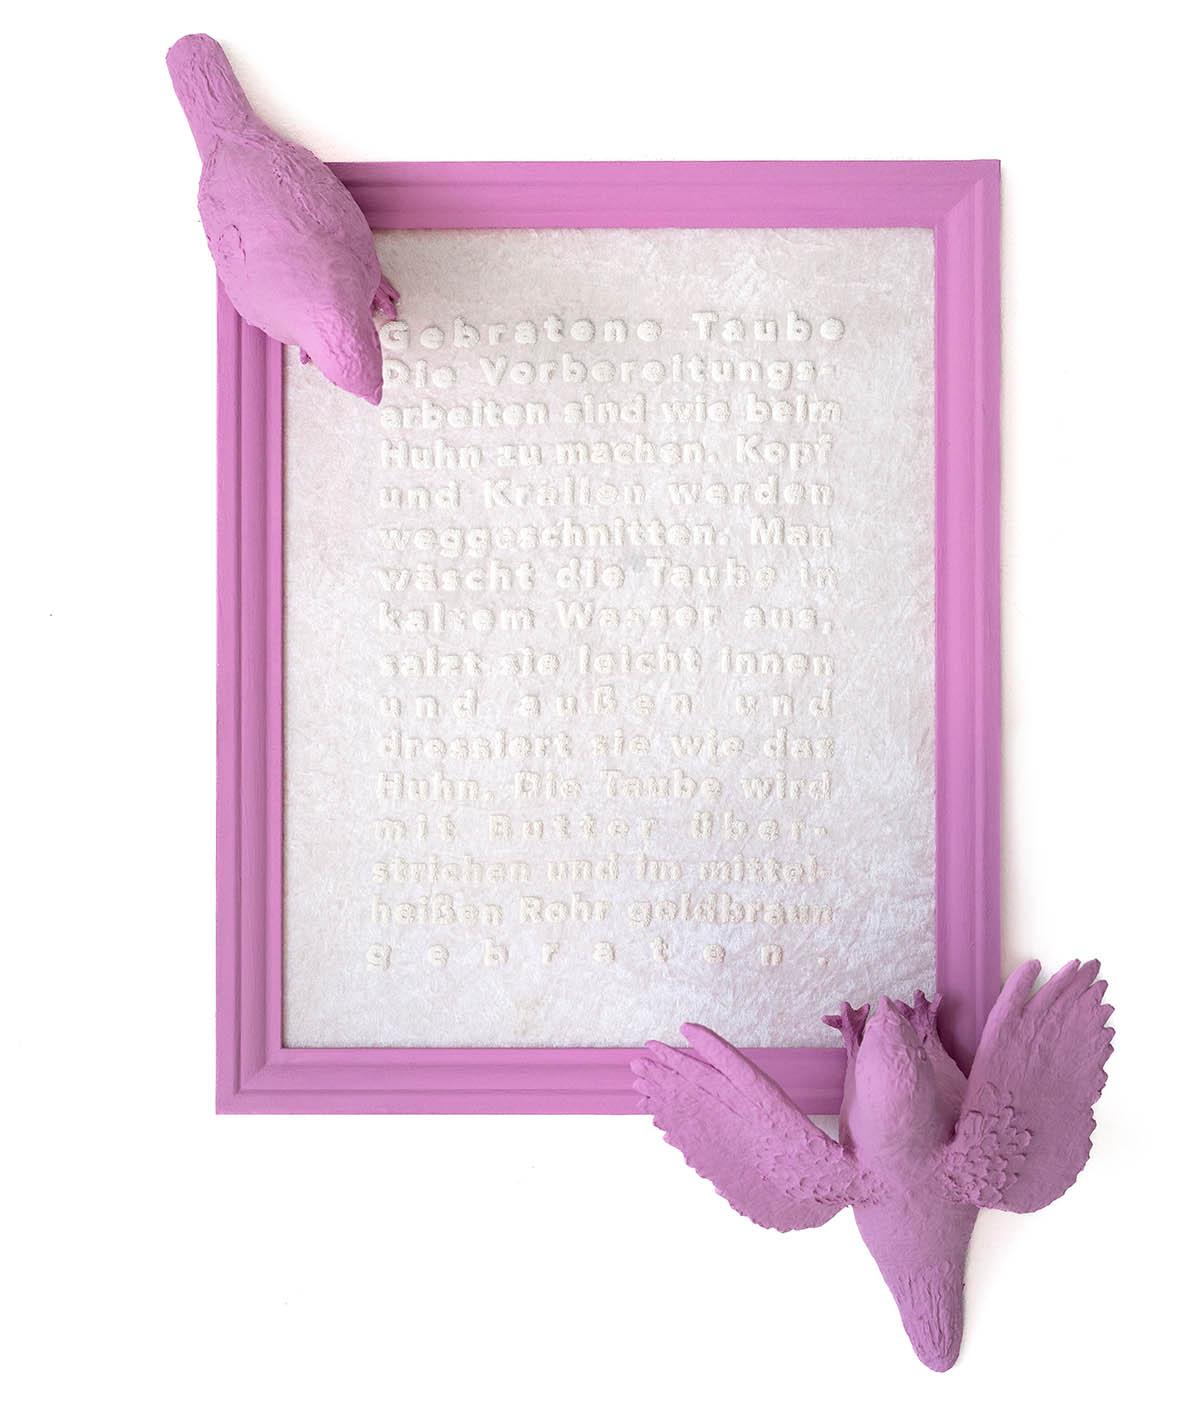 40 cm x 50 cm, ca. 10 m Siebdruck auf Samt mit Pappmaché Tauben Ein Rezept wie man Tauben zubereitet aus einem Kochbuch von ca. 1940. Spiegelt die persönliche Gefühlsebene sehr gut wider.